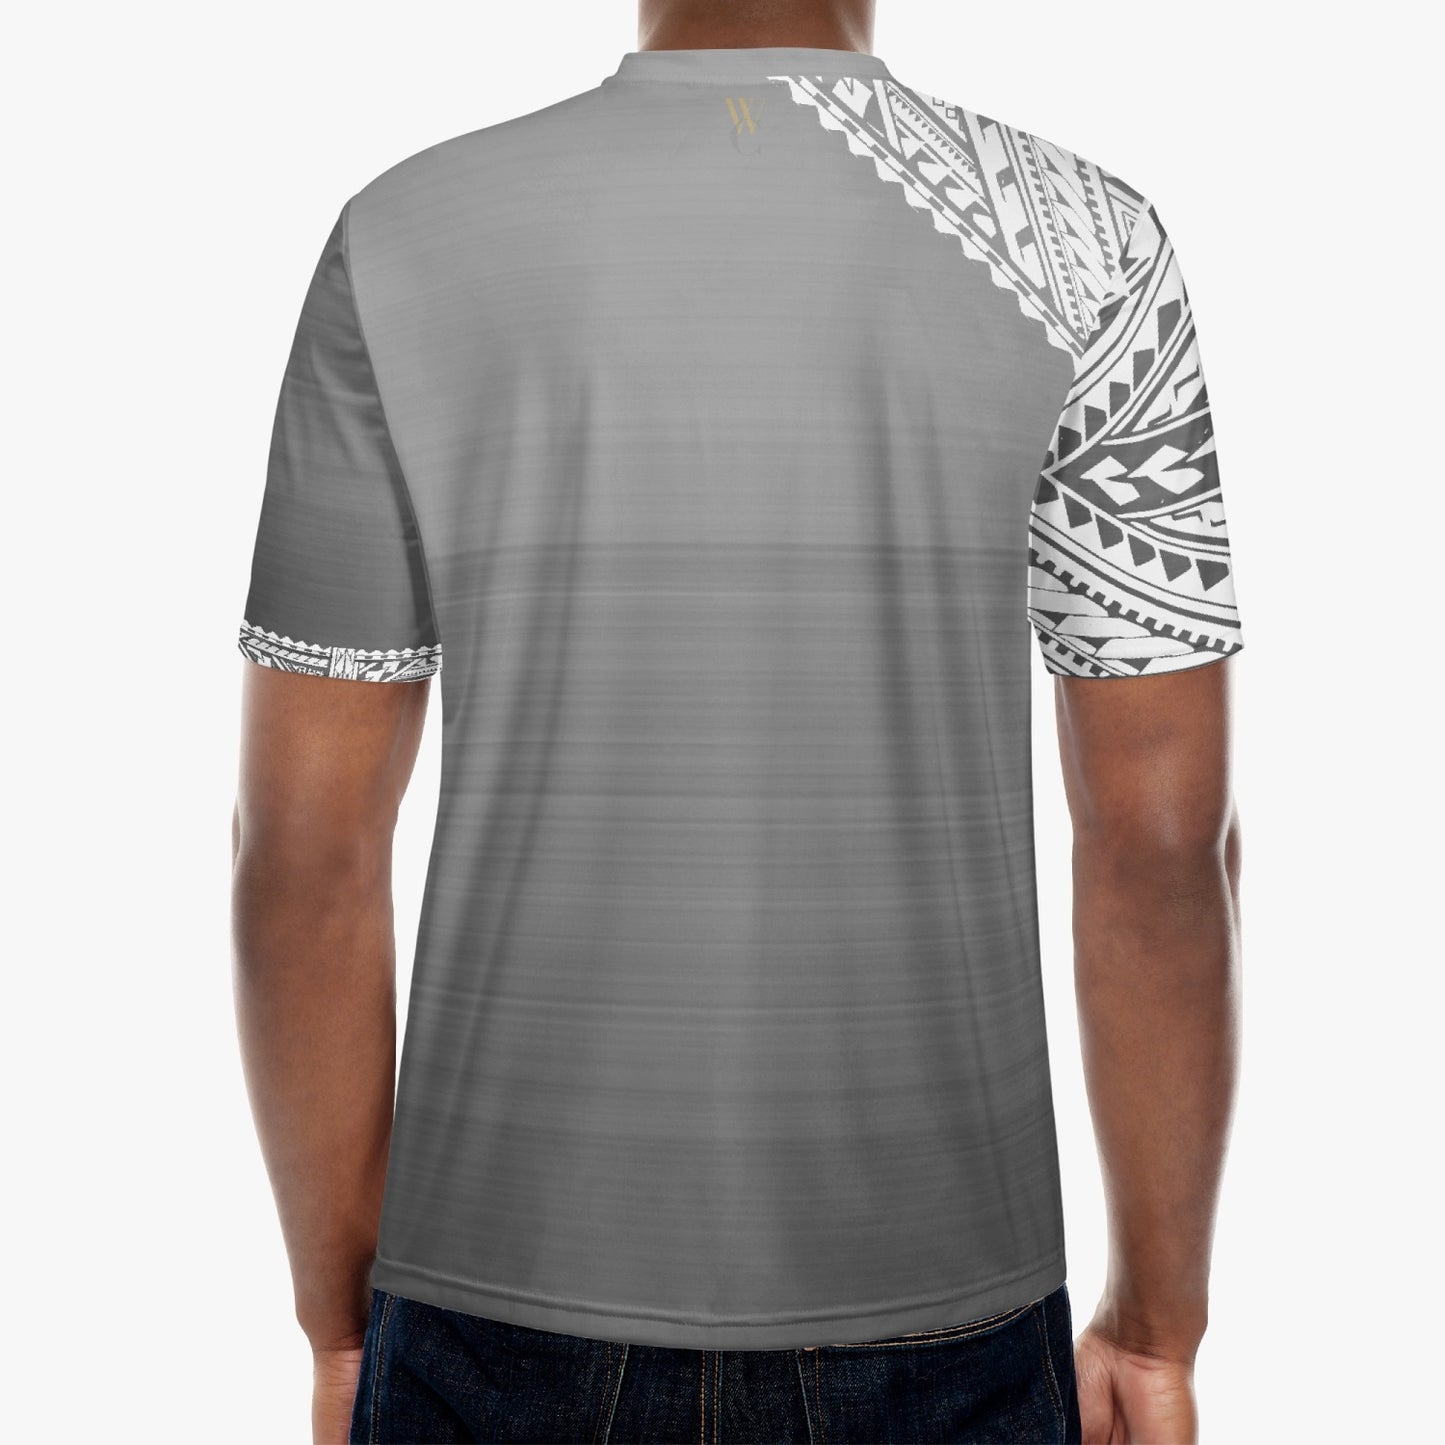 Tatau - T-shirt